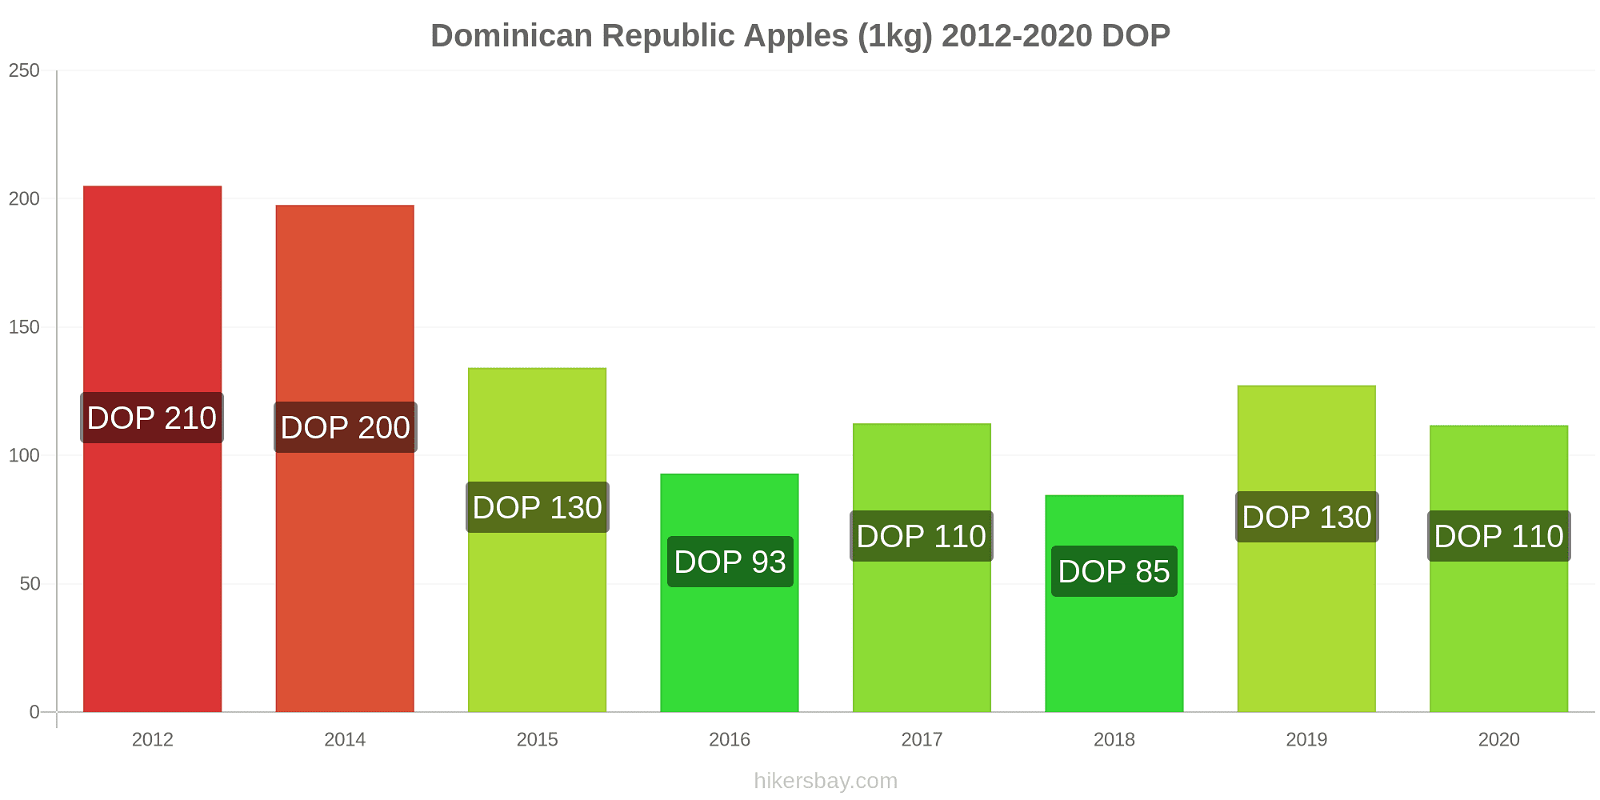 Dominican Republic price changes Apples (1kg) hikersbay.com